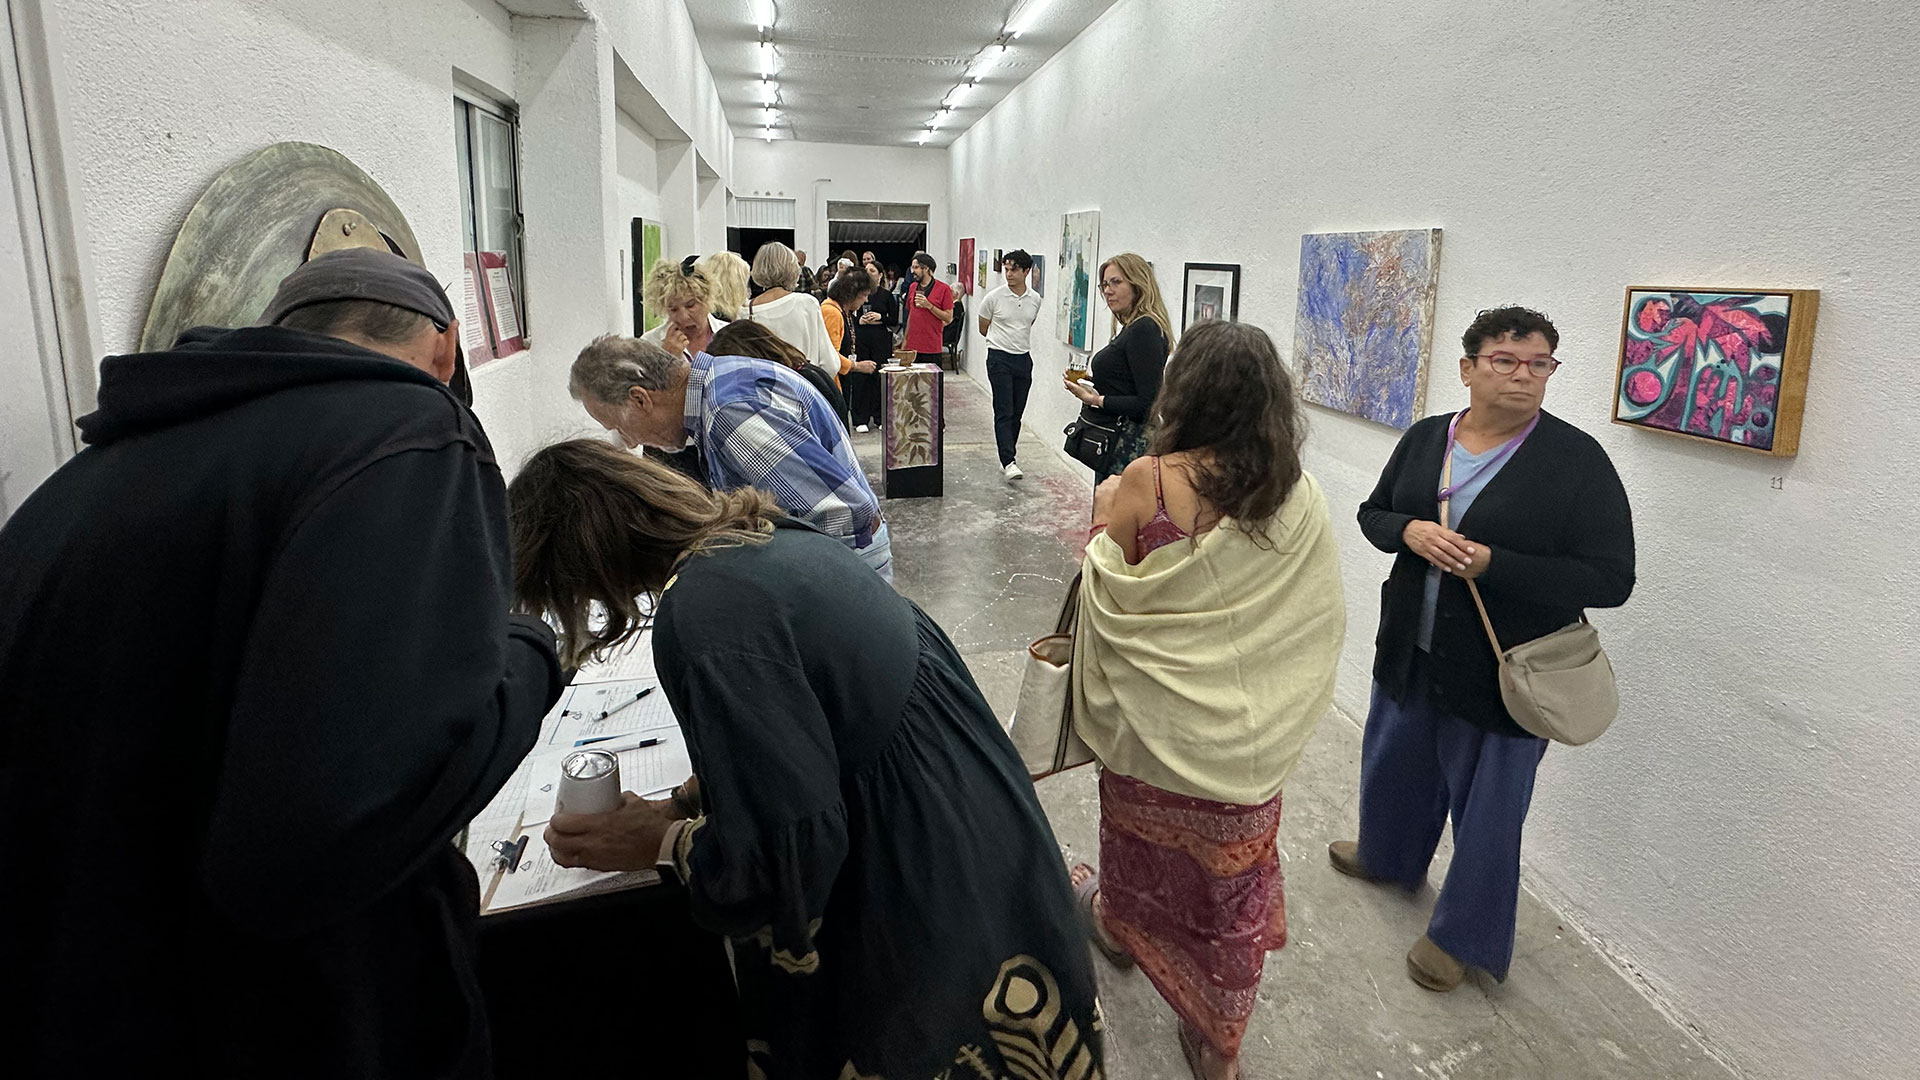 Opening Night Reception at Galeria Enrique Guerrero in Todos Santos